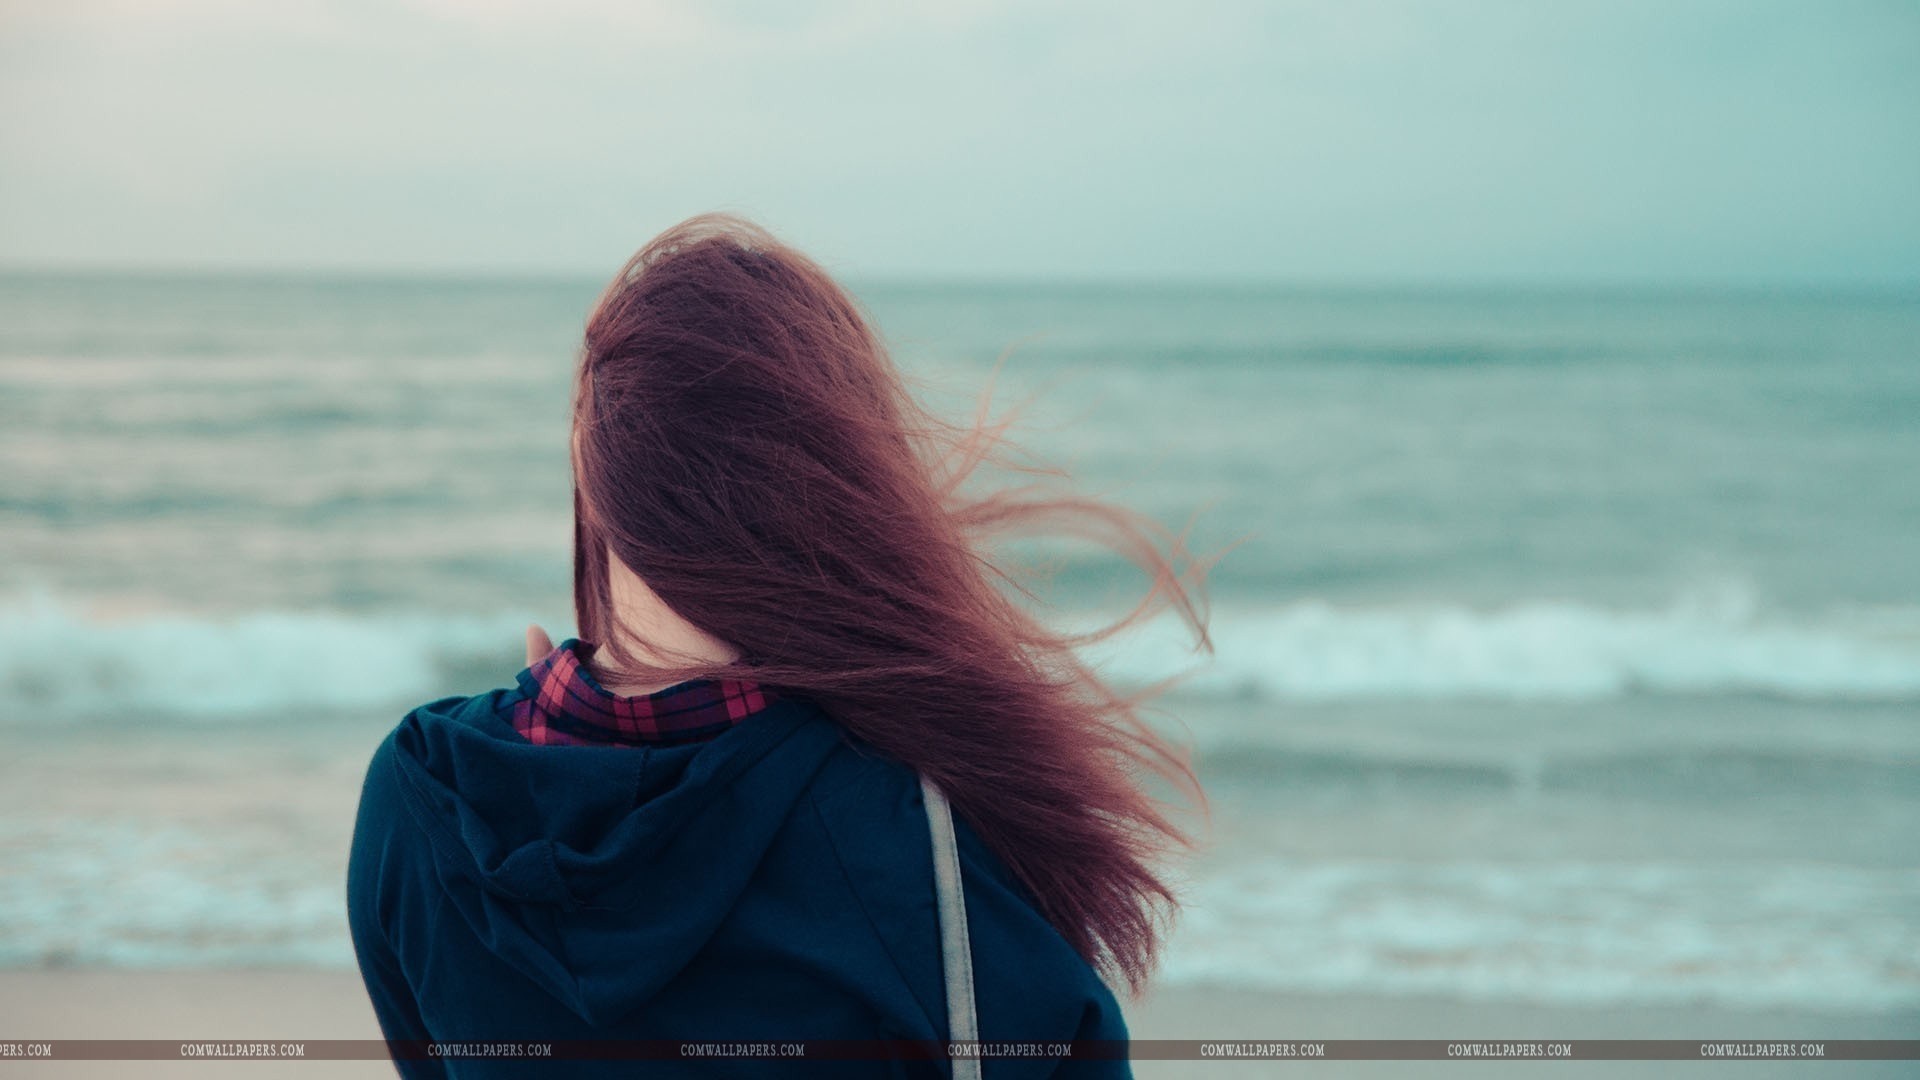 sad girl wallpaper,hair,photograph,sea,sky,ocean